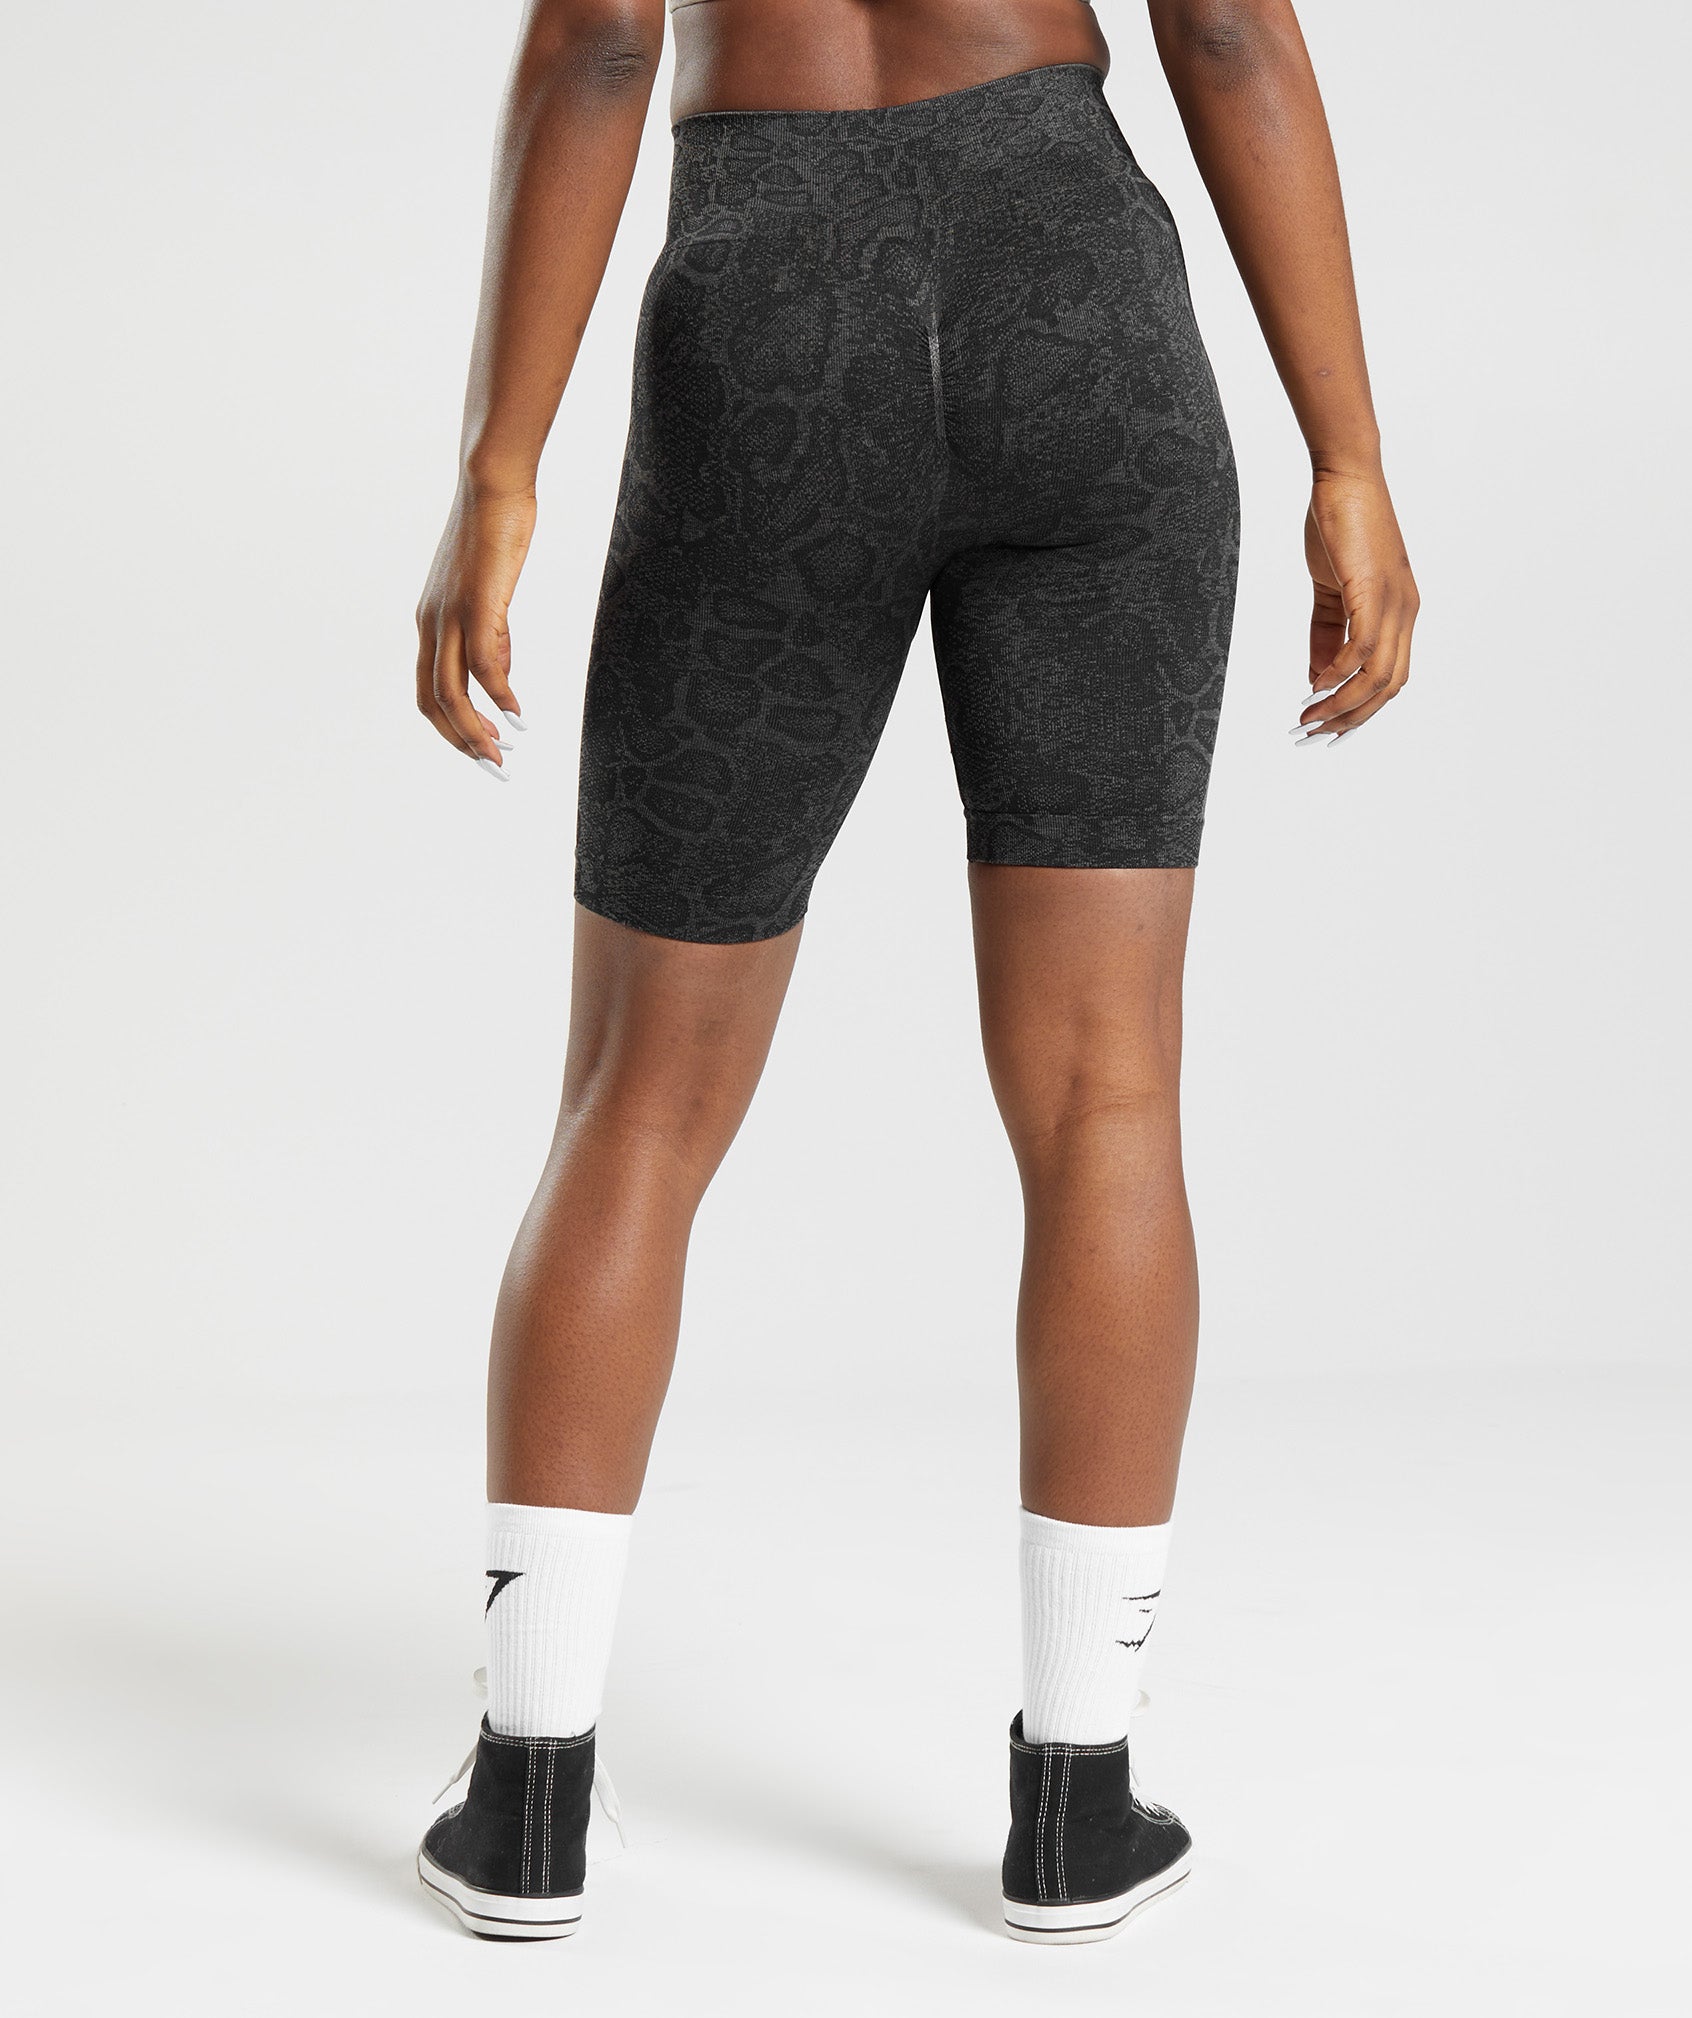 Womens Grey Shorts, Joggings & Cycling Shorts